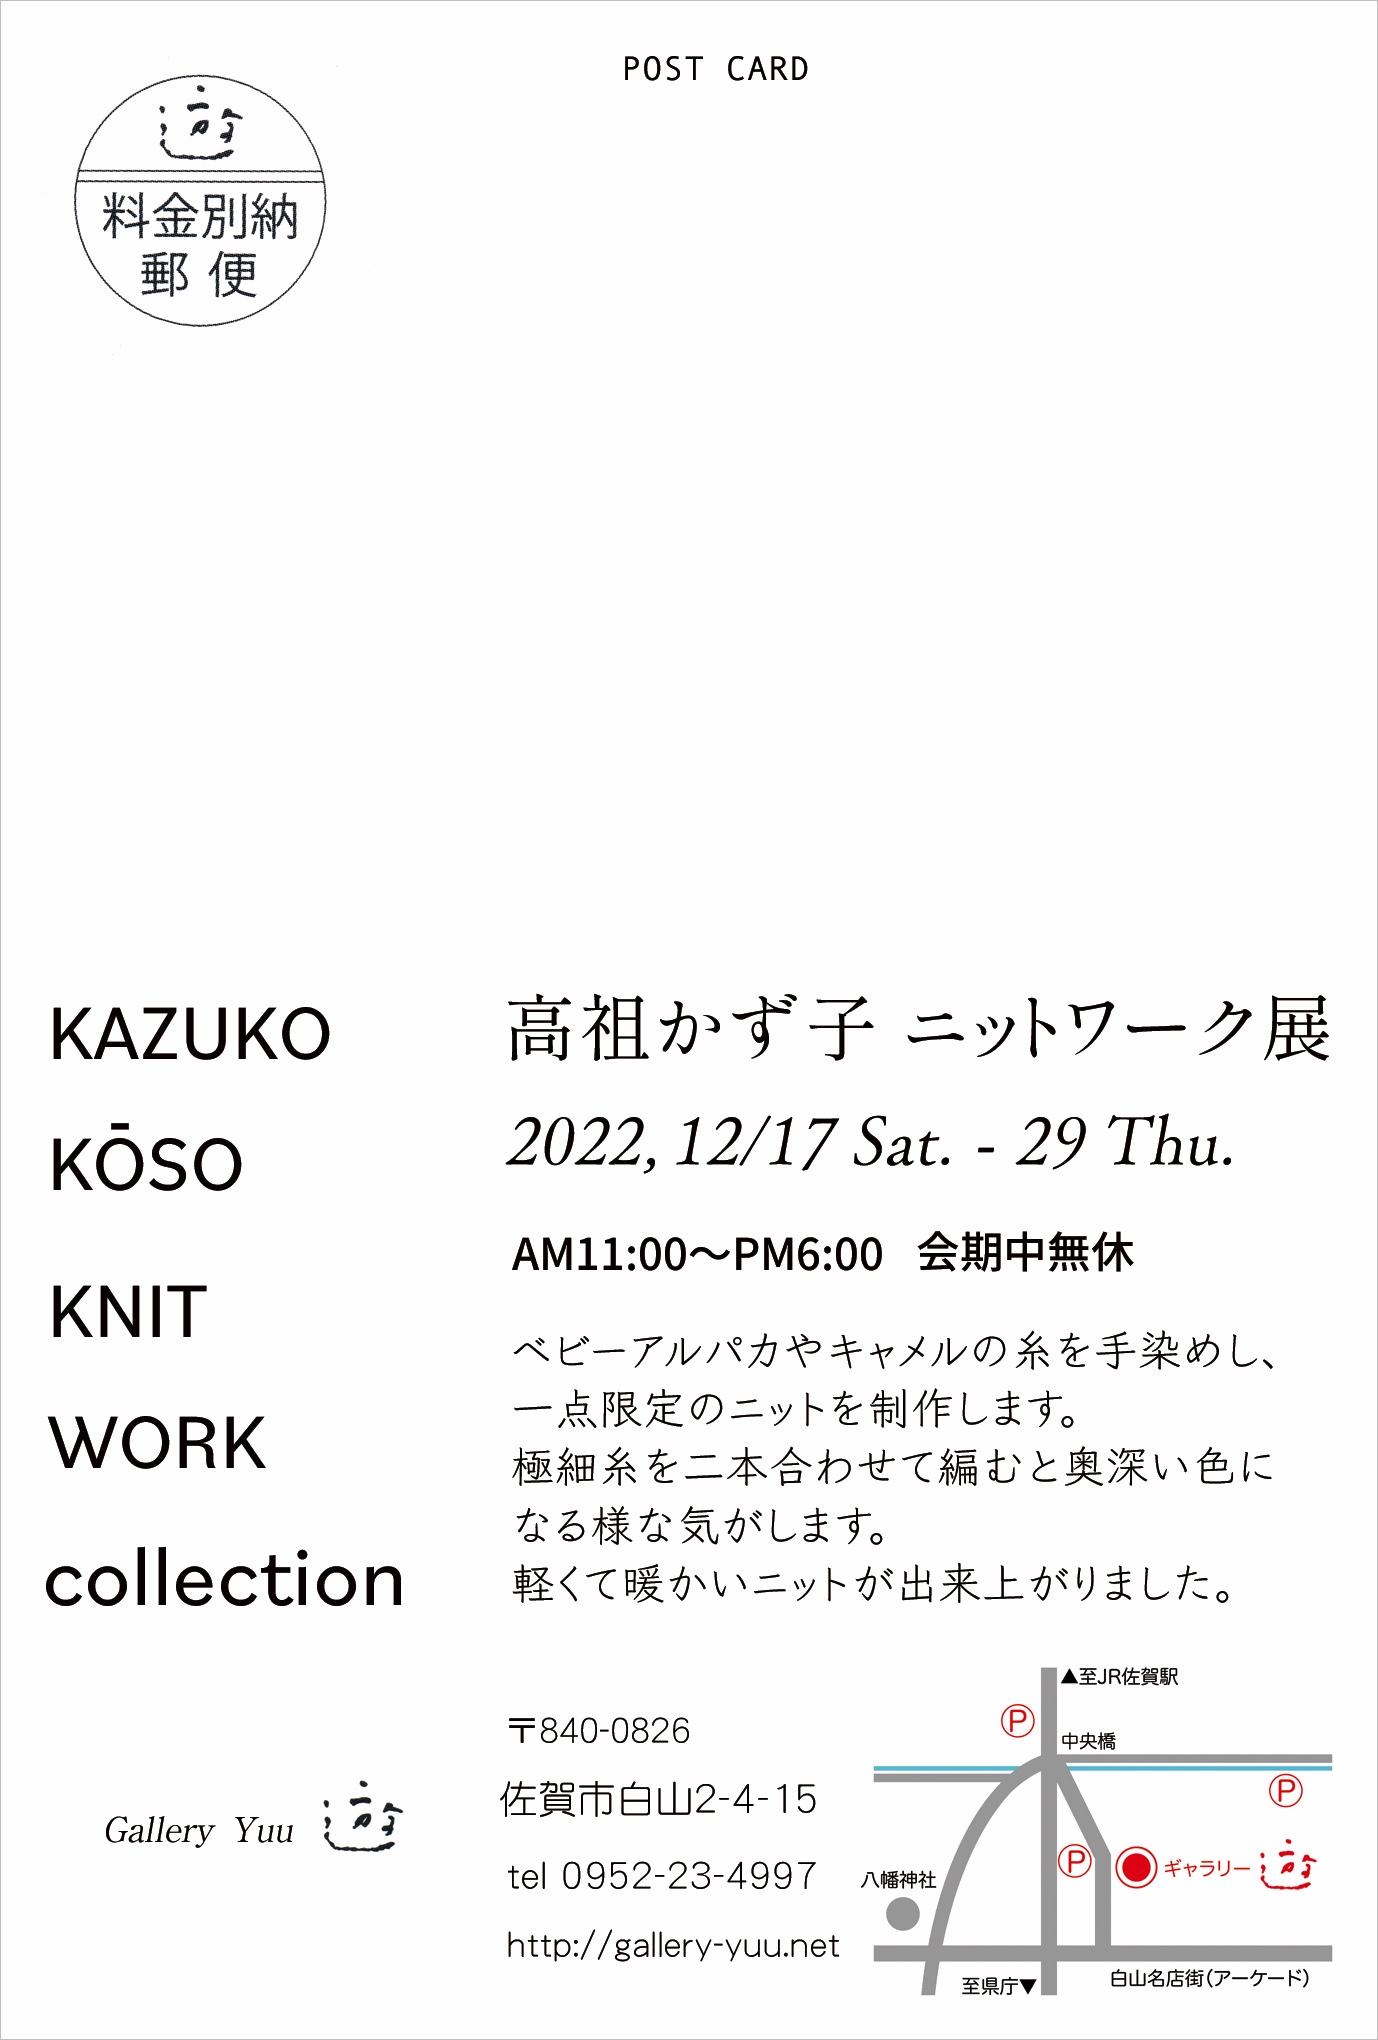 KAZUKO KOSO KNIT WORK collection